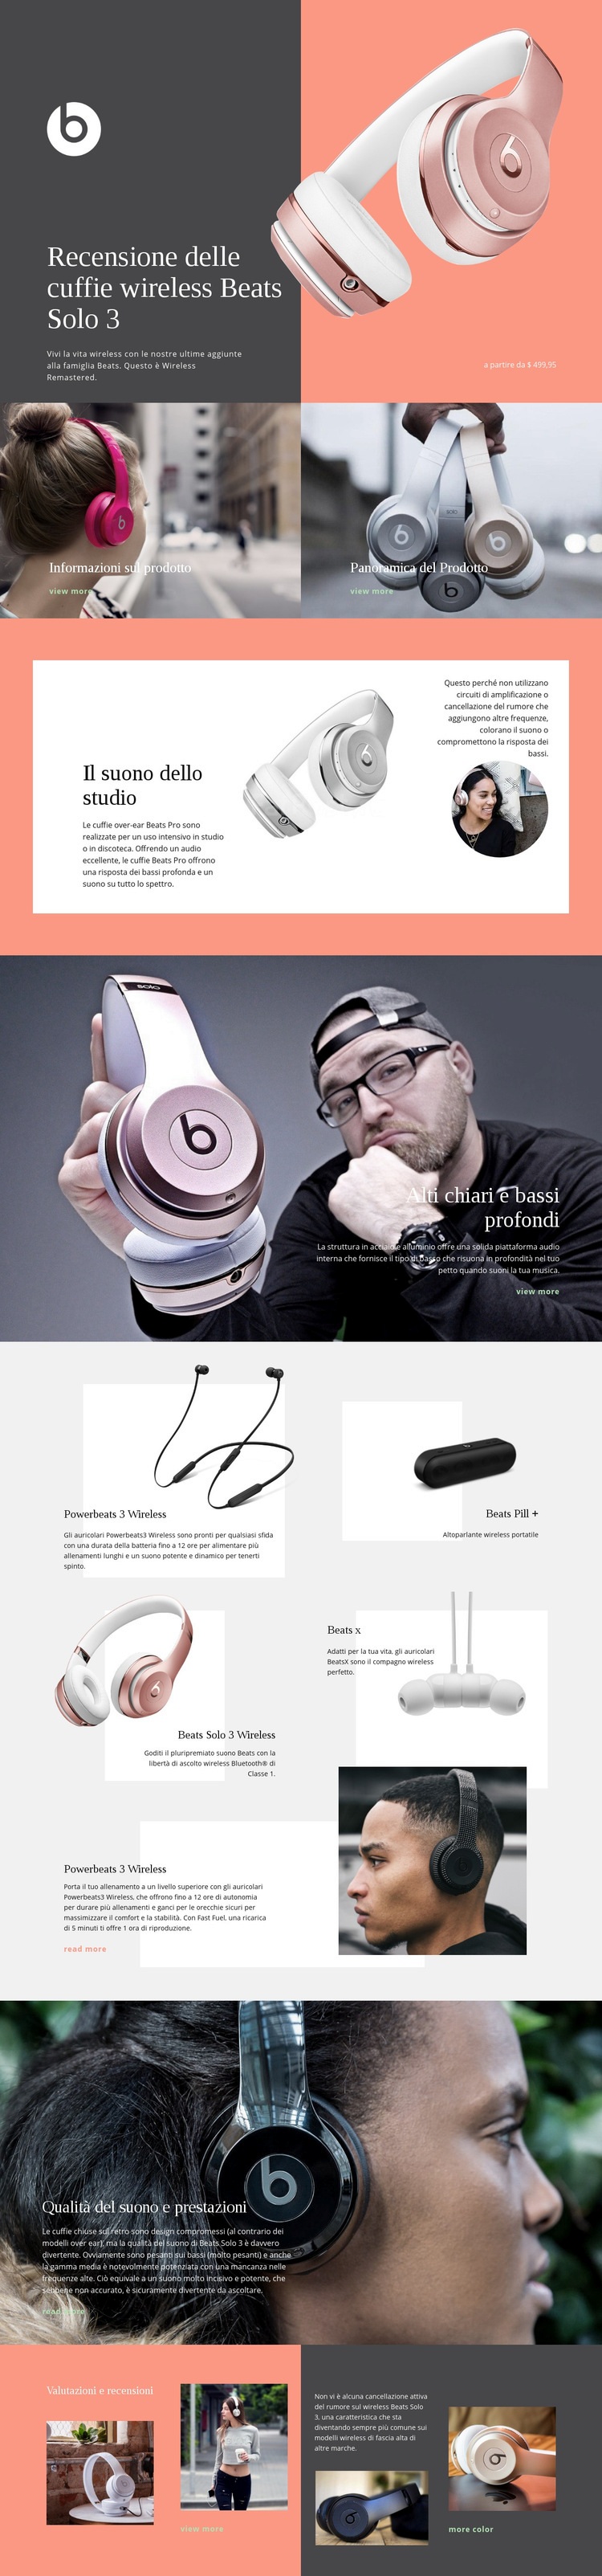 Beats Wireless Progettazione di siti web